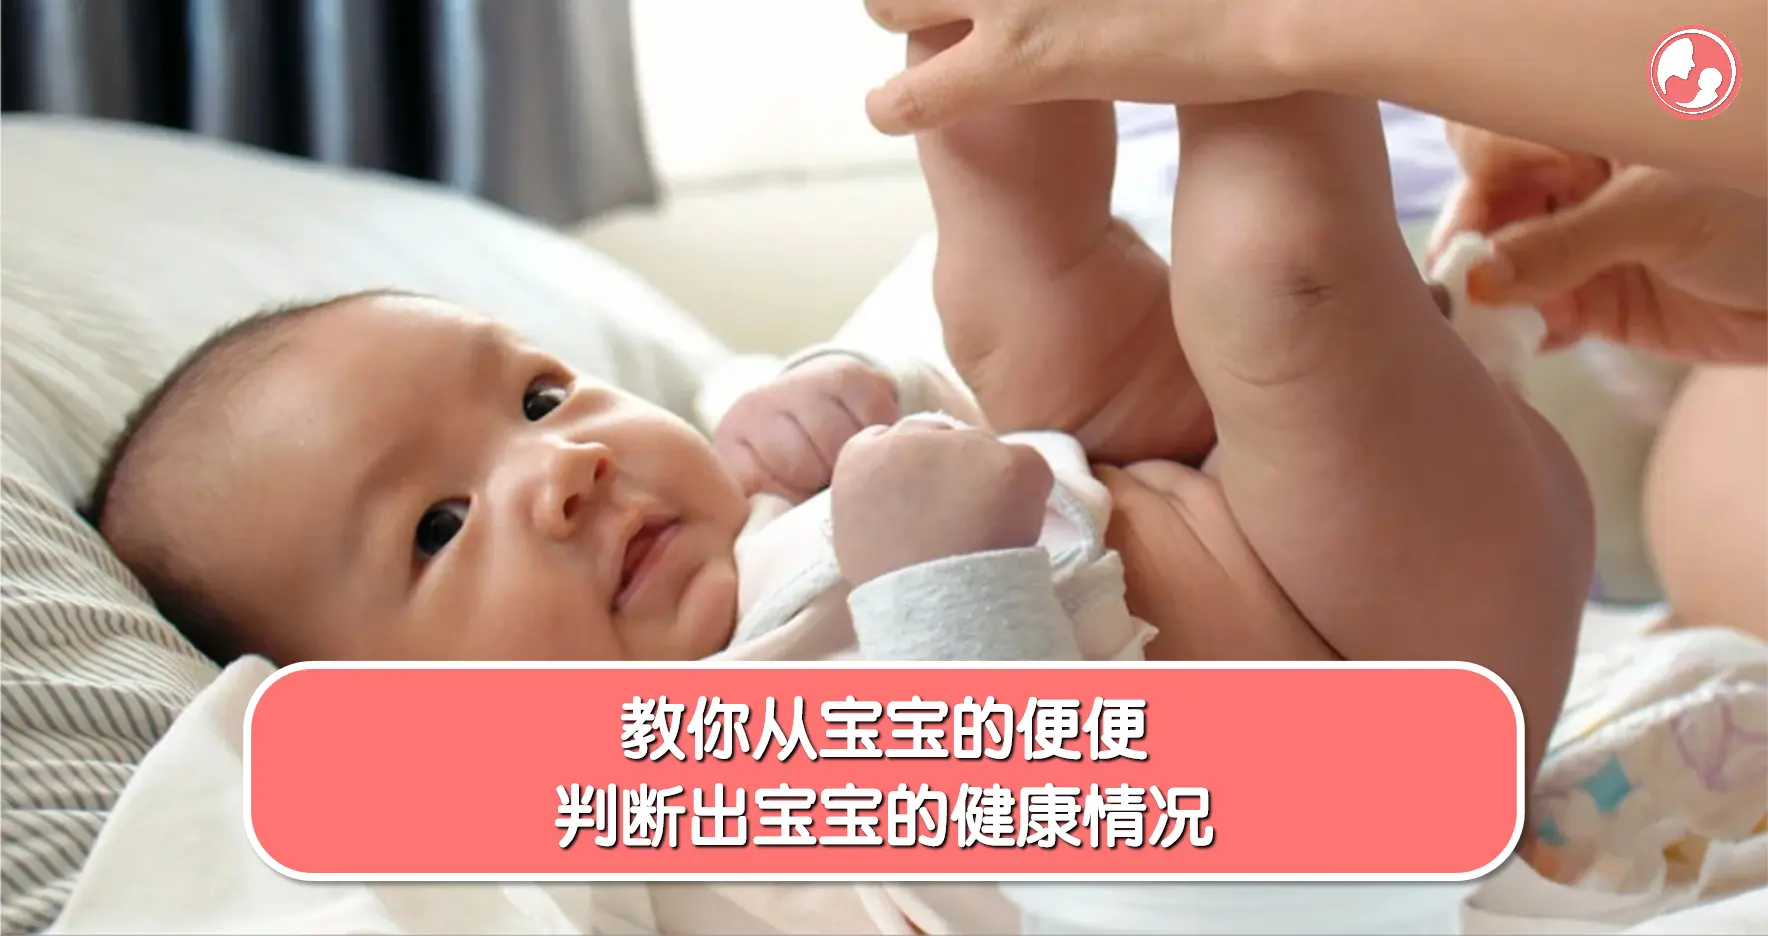 【便便篇】教你从宝宝的便便，判断出宝宝的健康情况 -MamaClub